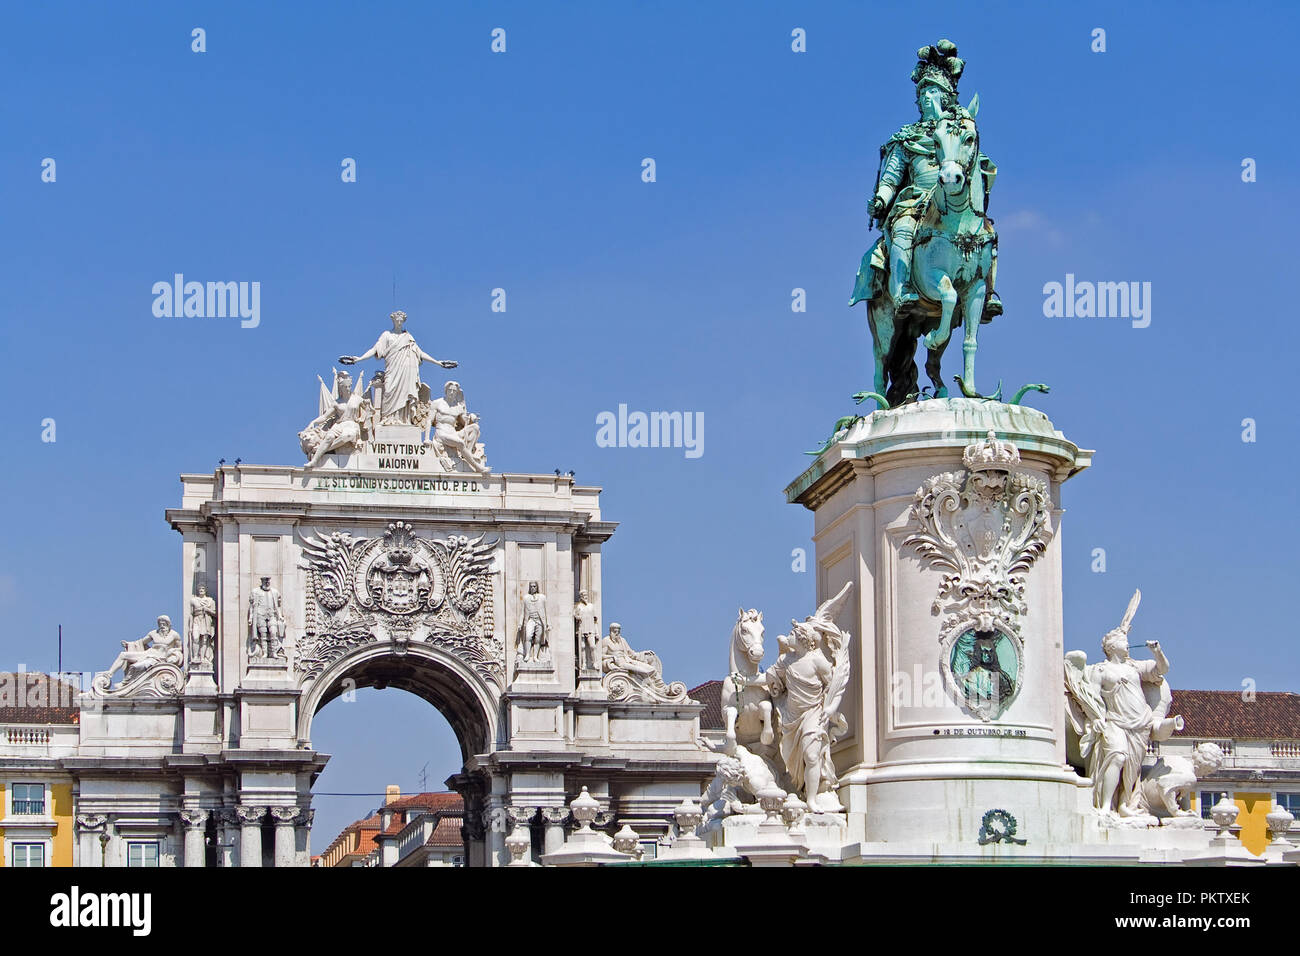 Lisbona, Portogallo. Piazza del commercio aka Praca do Comercio o Terreiro do Paco, con il famoso Arco Trionfale e re Dom Jose io statua. Foto Stock